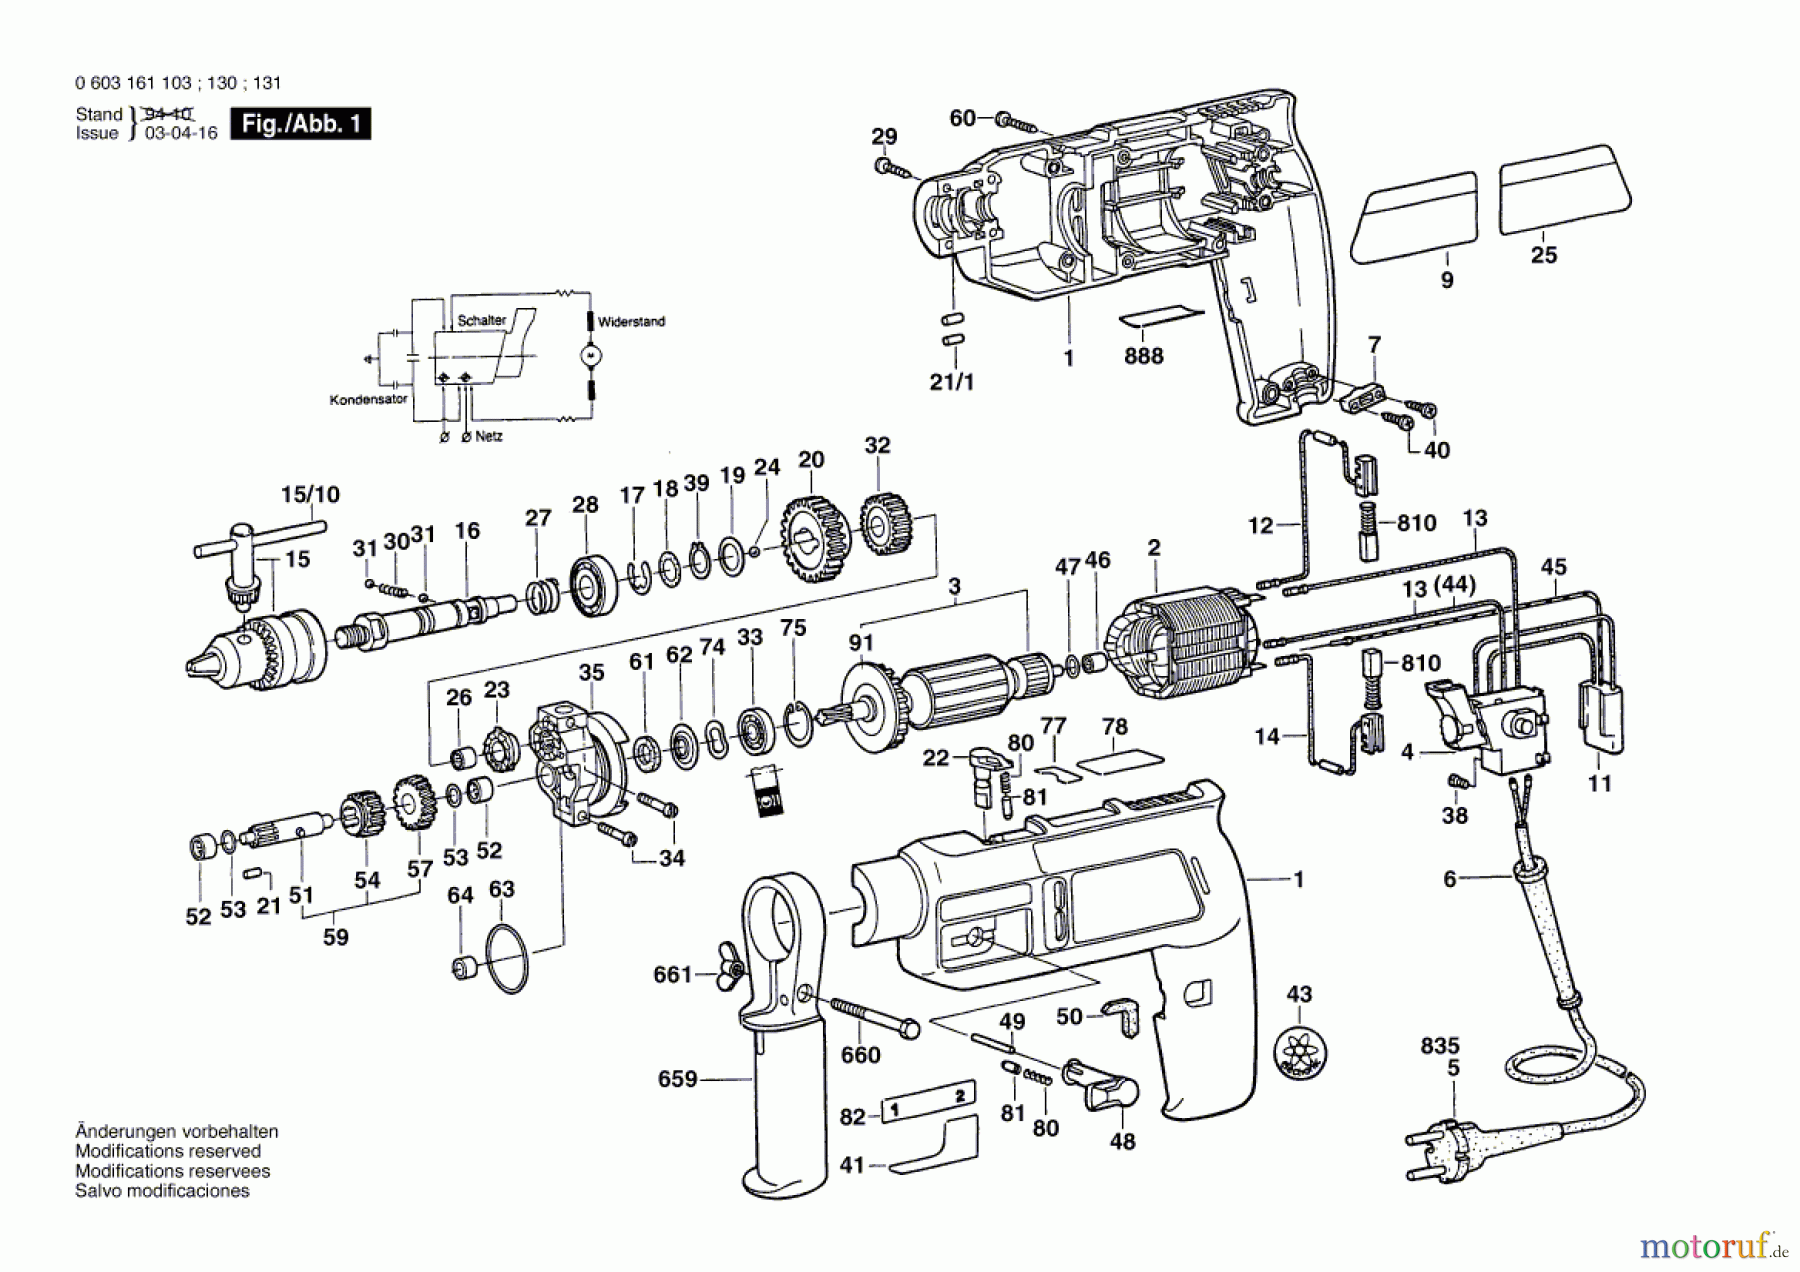  Bosch Werkzeug Schlagbohrmaschine CSB 460-2 Seite 1